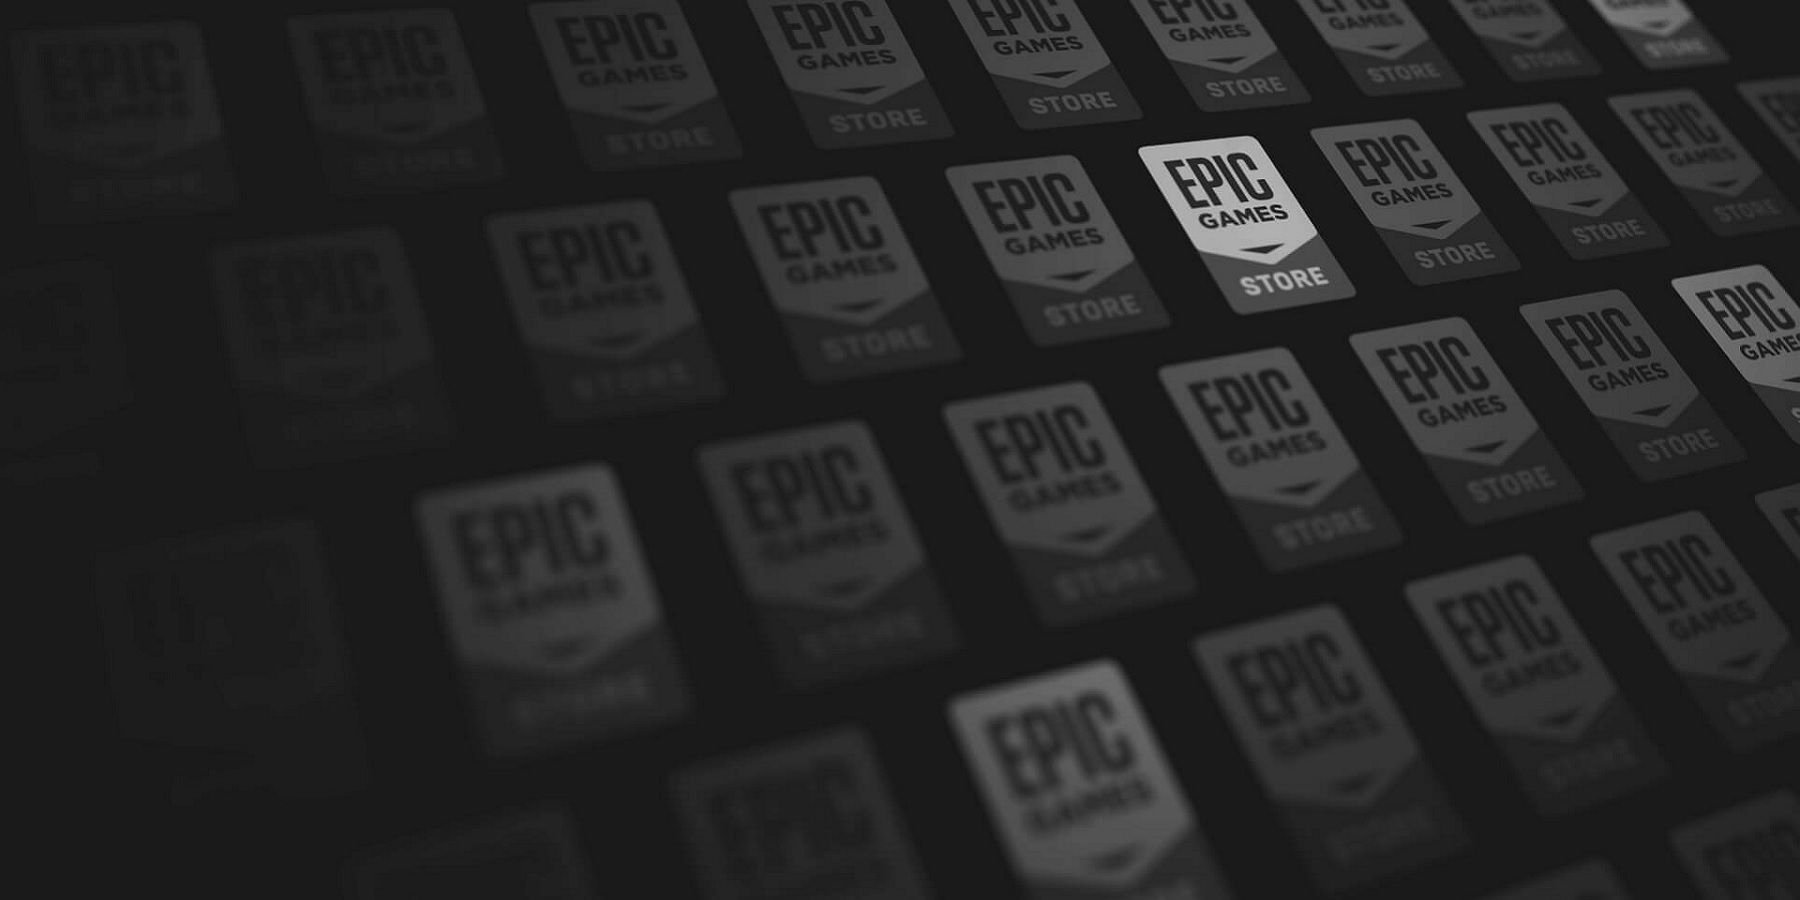 epic games store logos